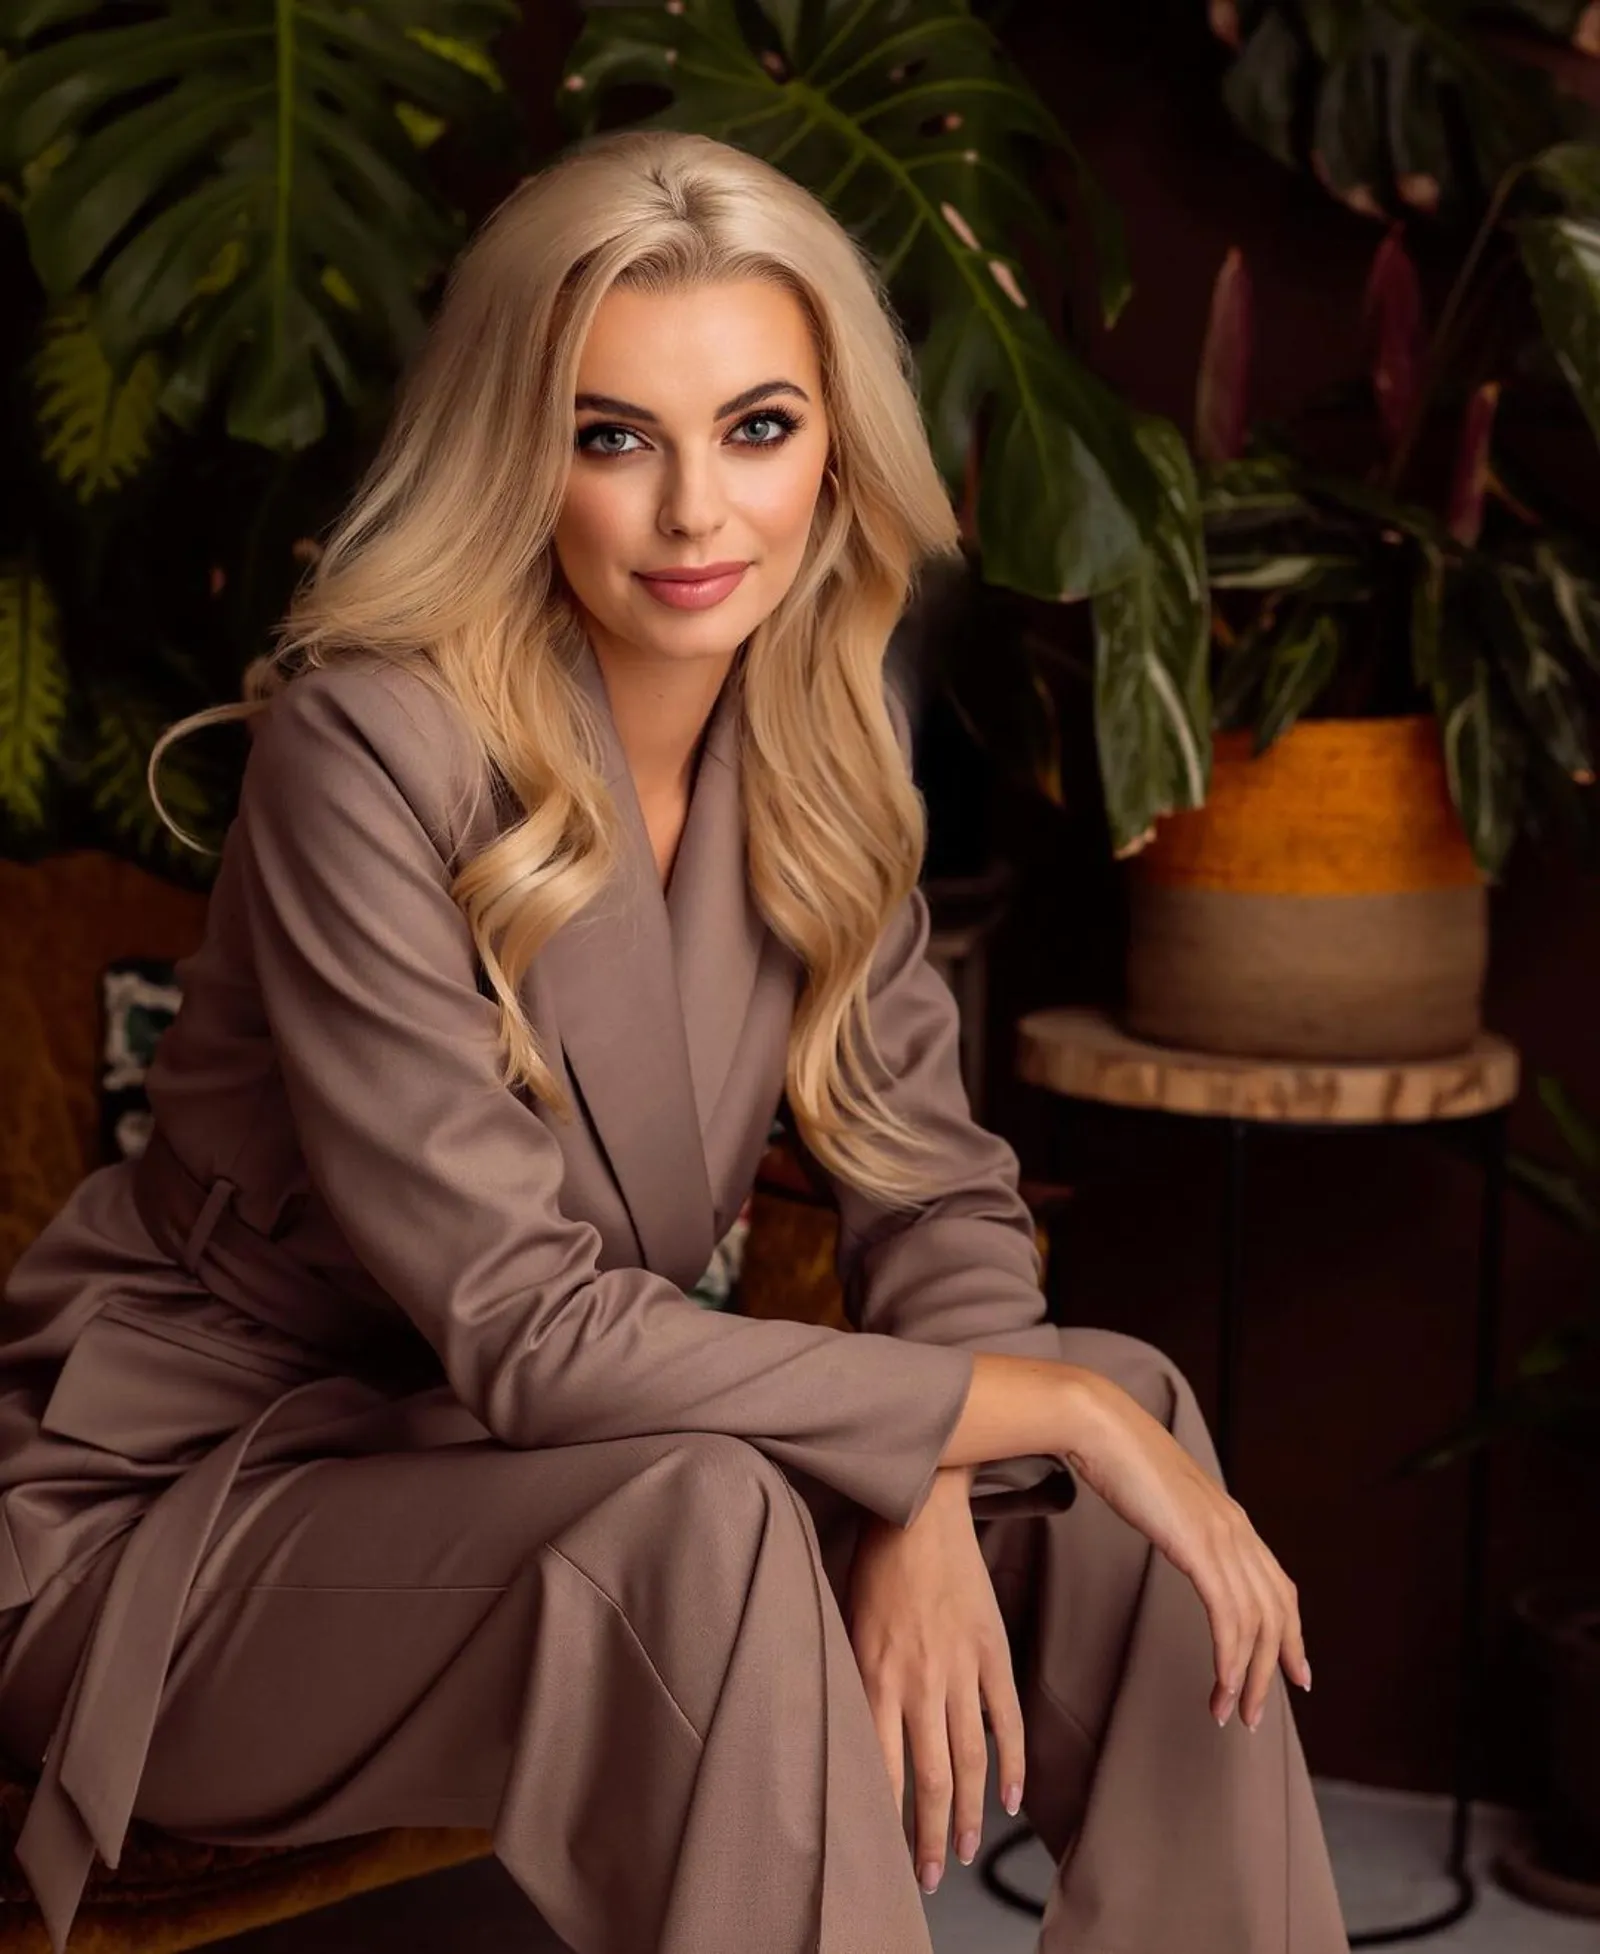 Gaya Karolina Bielawska, Perempuan Polandia yang Gelar Miss World 2021